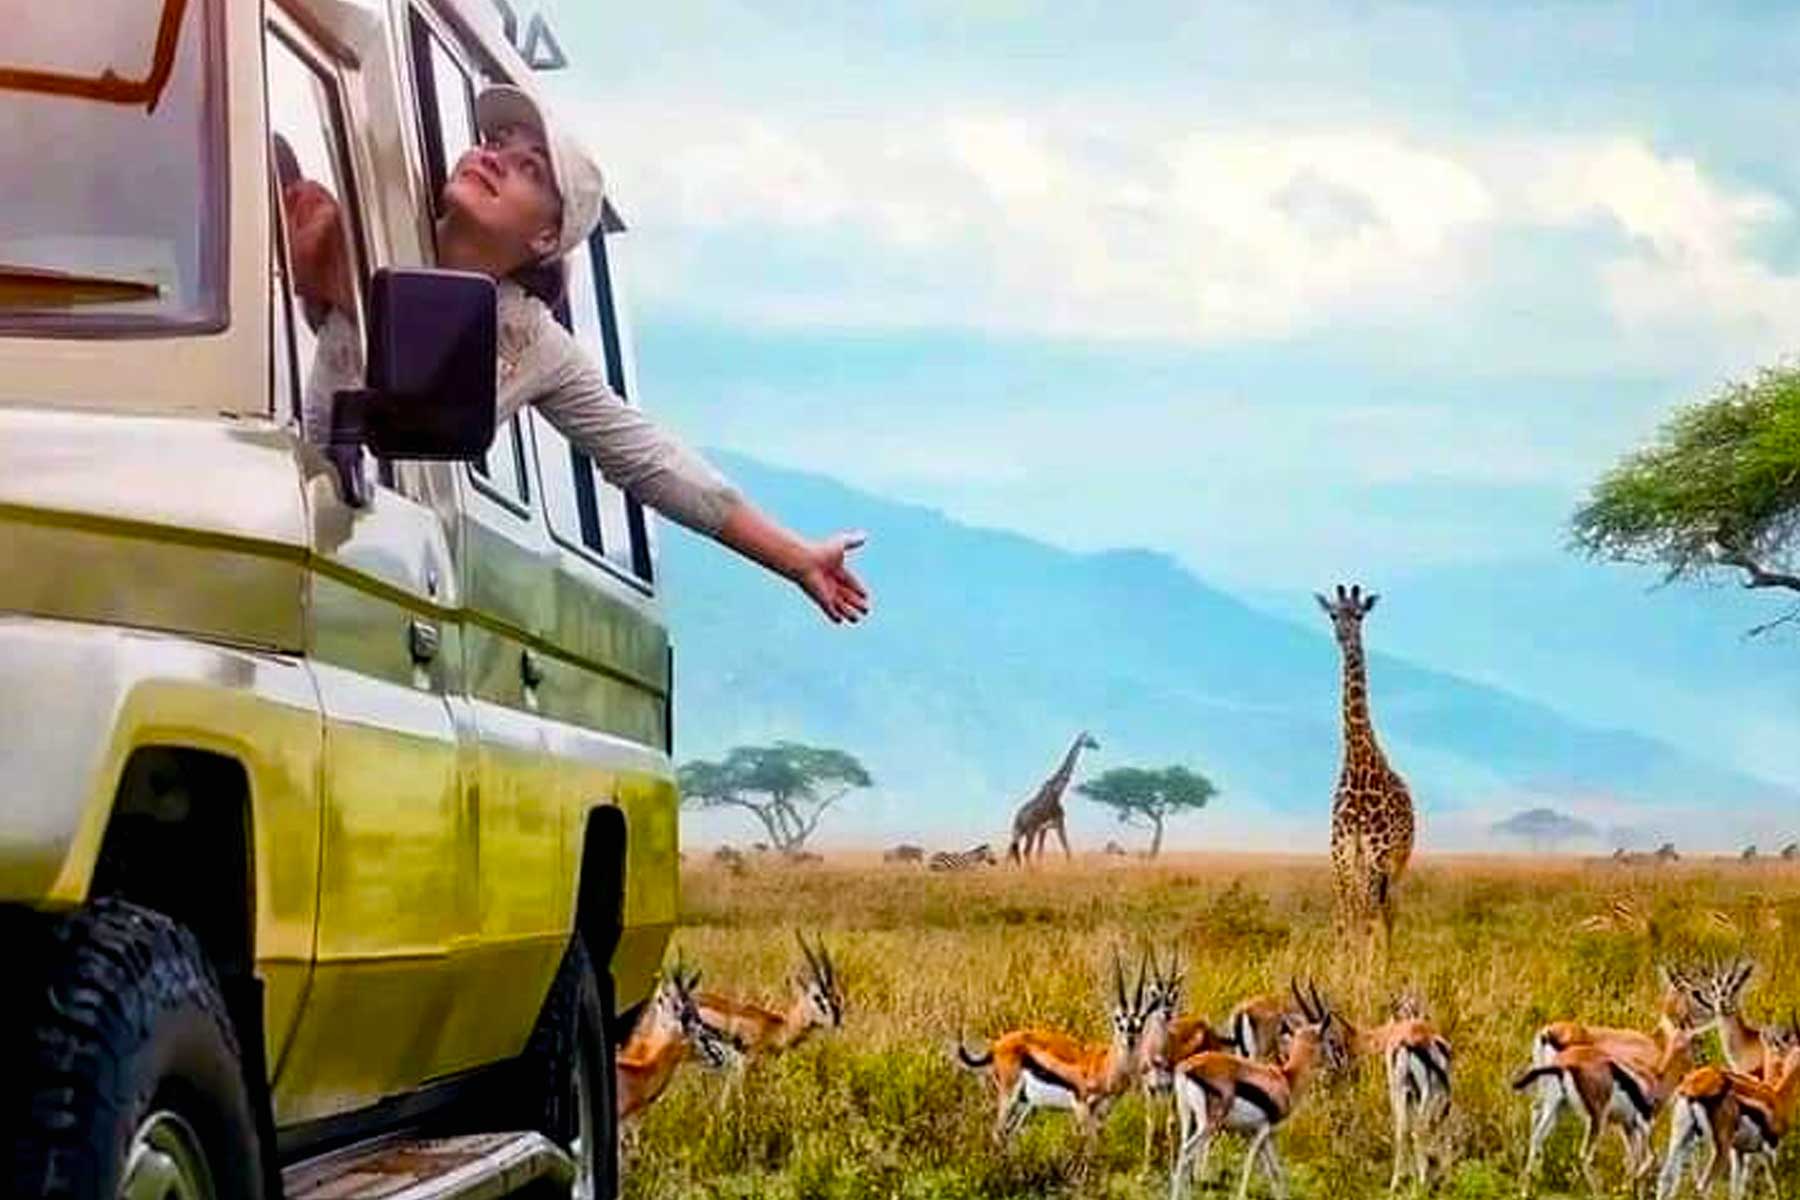 turning-your-adventure-safari-into-fun